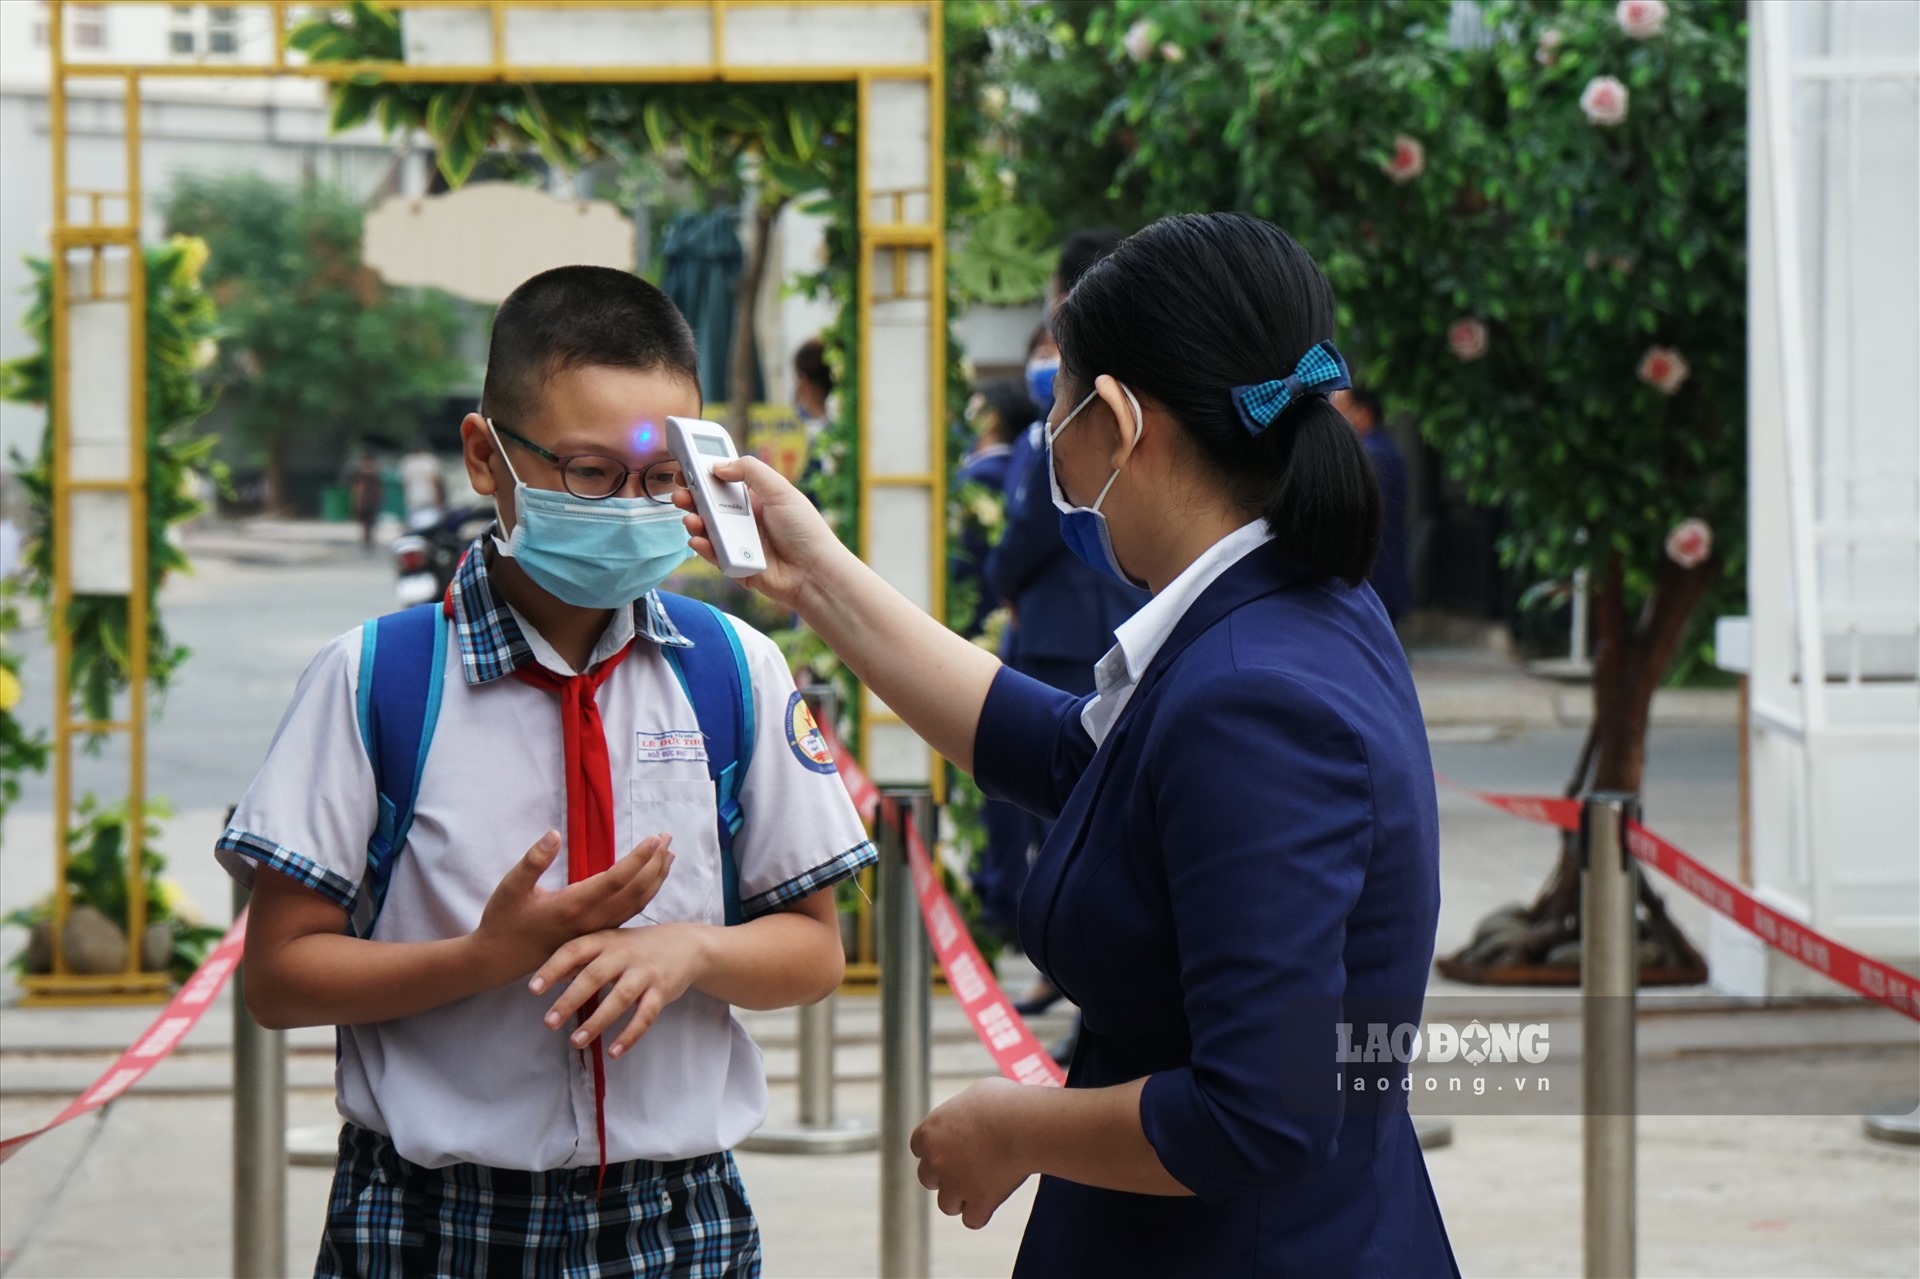 Theo ghi nhận, các em học sinh đều tự trang bị khẩu trang y tế khi đến trường.